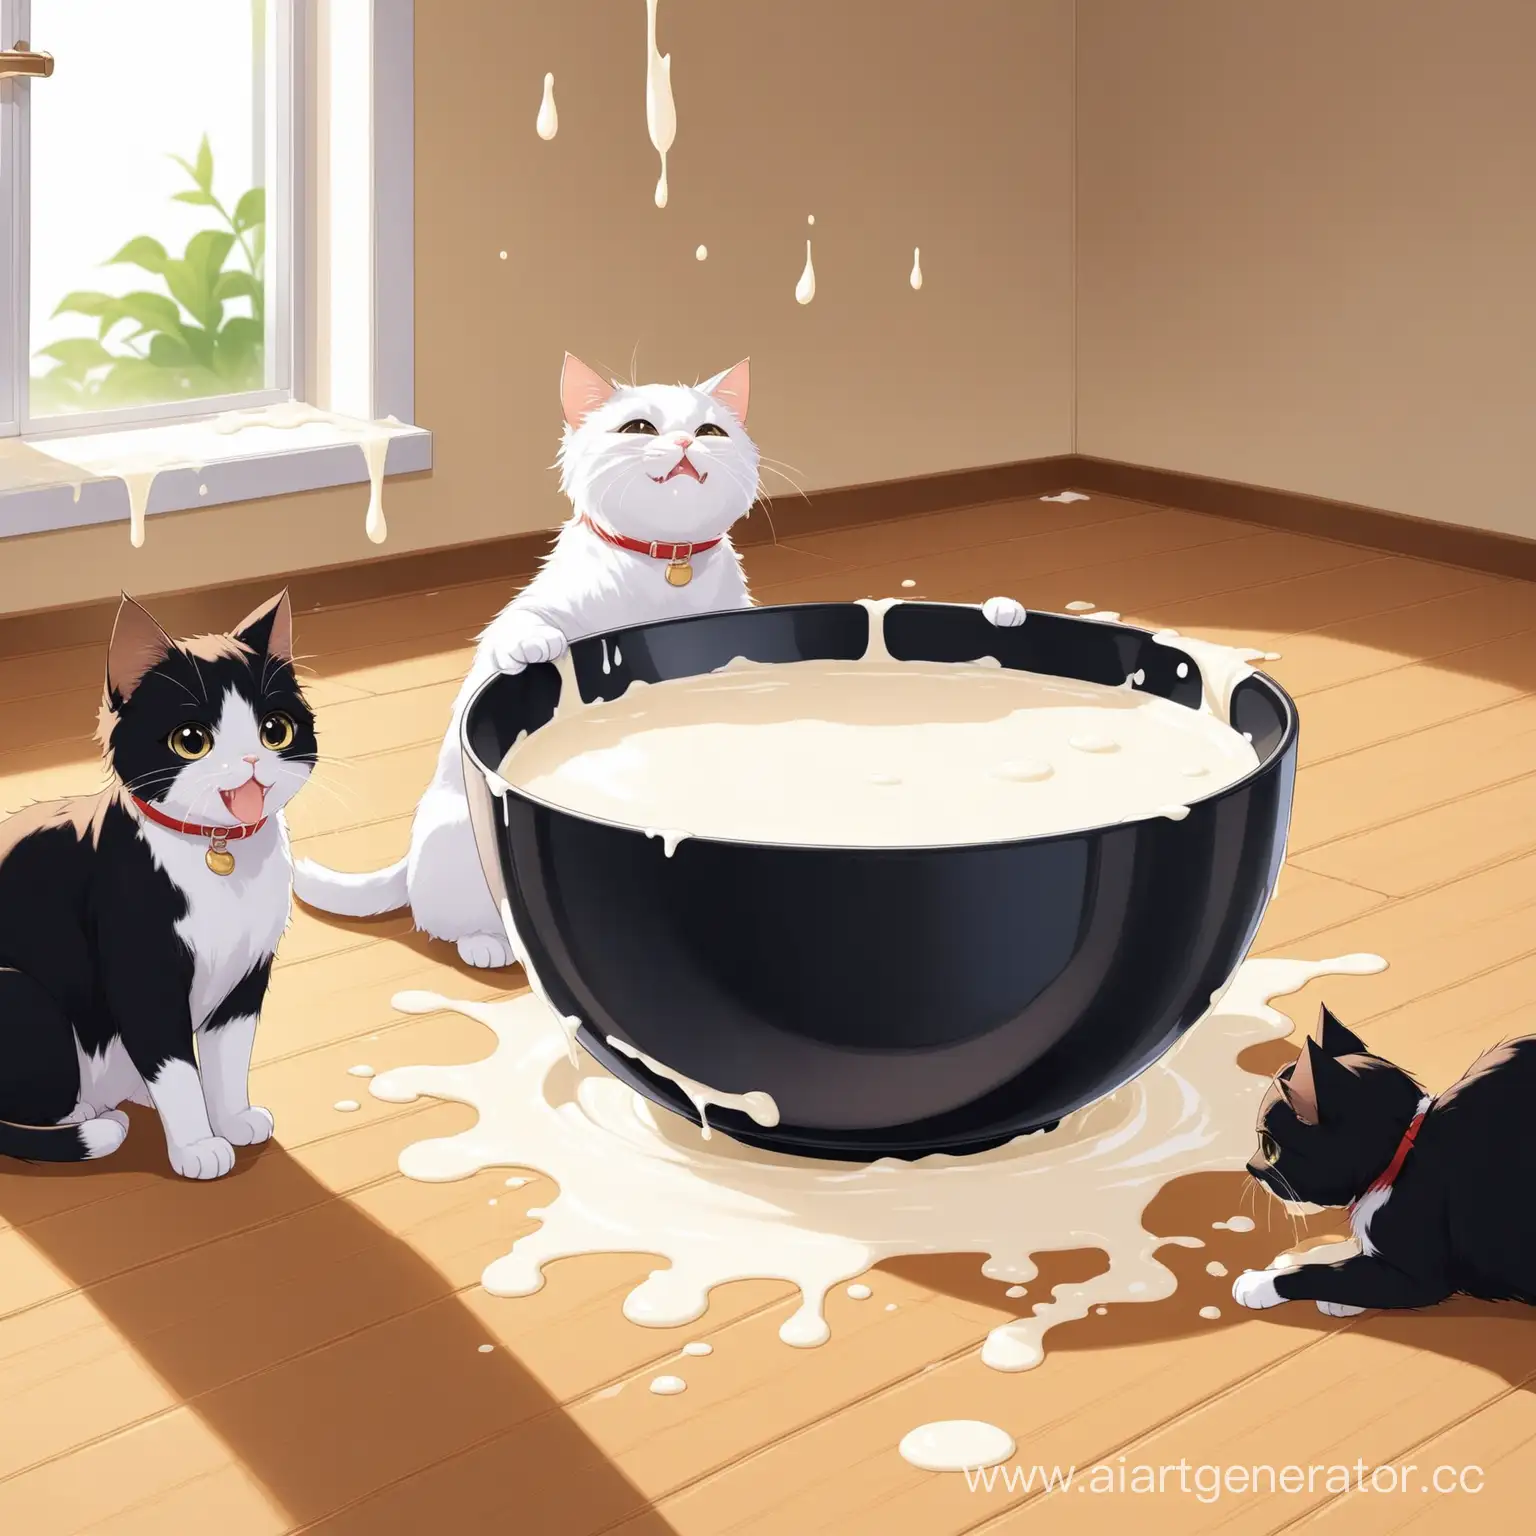 3 кота упали в огромную миску с молоком, молока выливается через край и затопляет дом